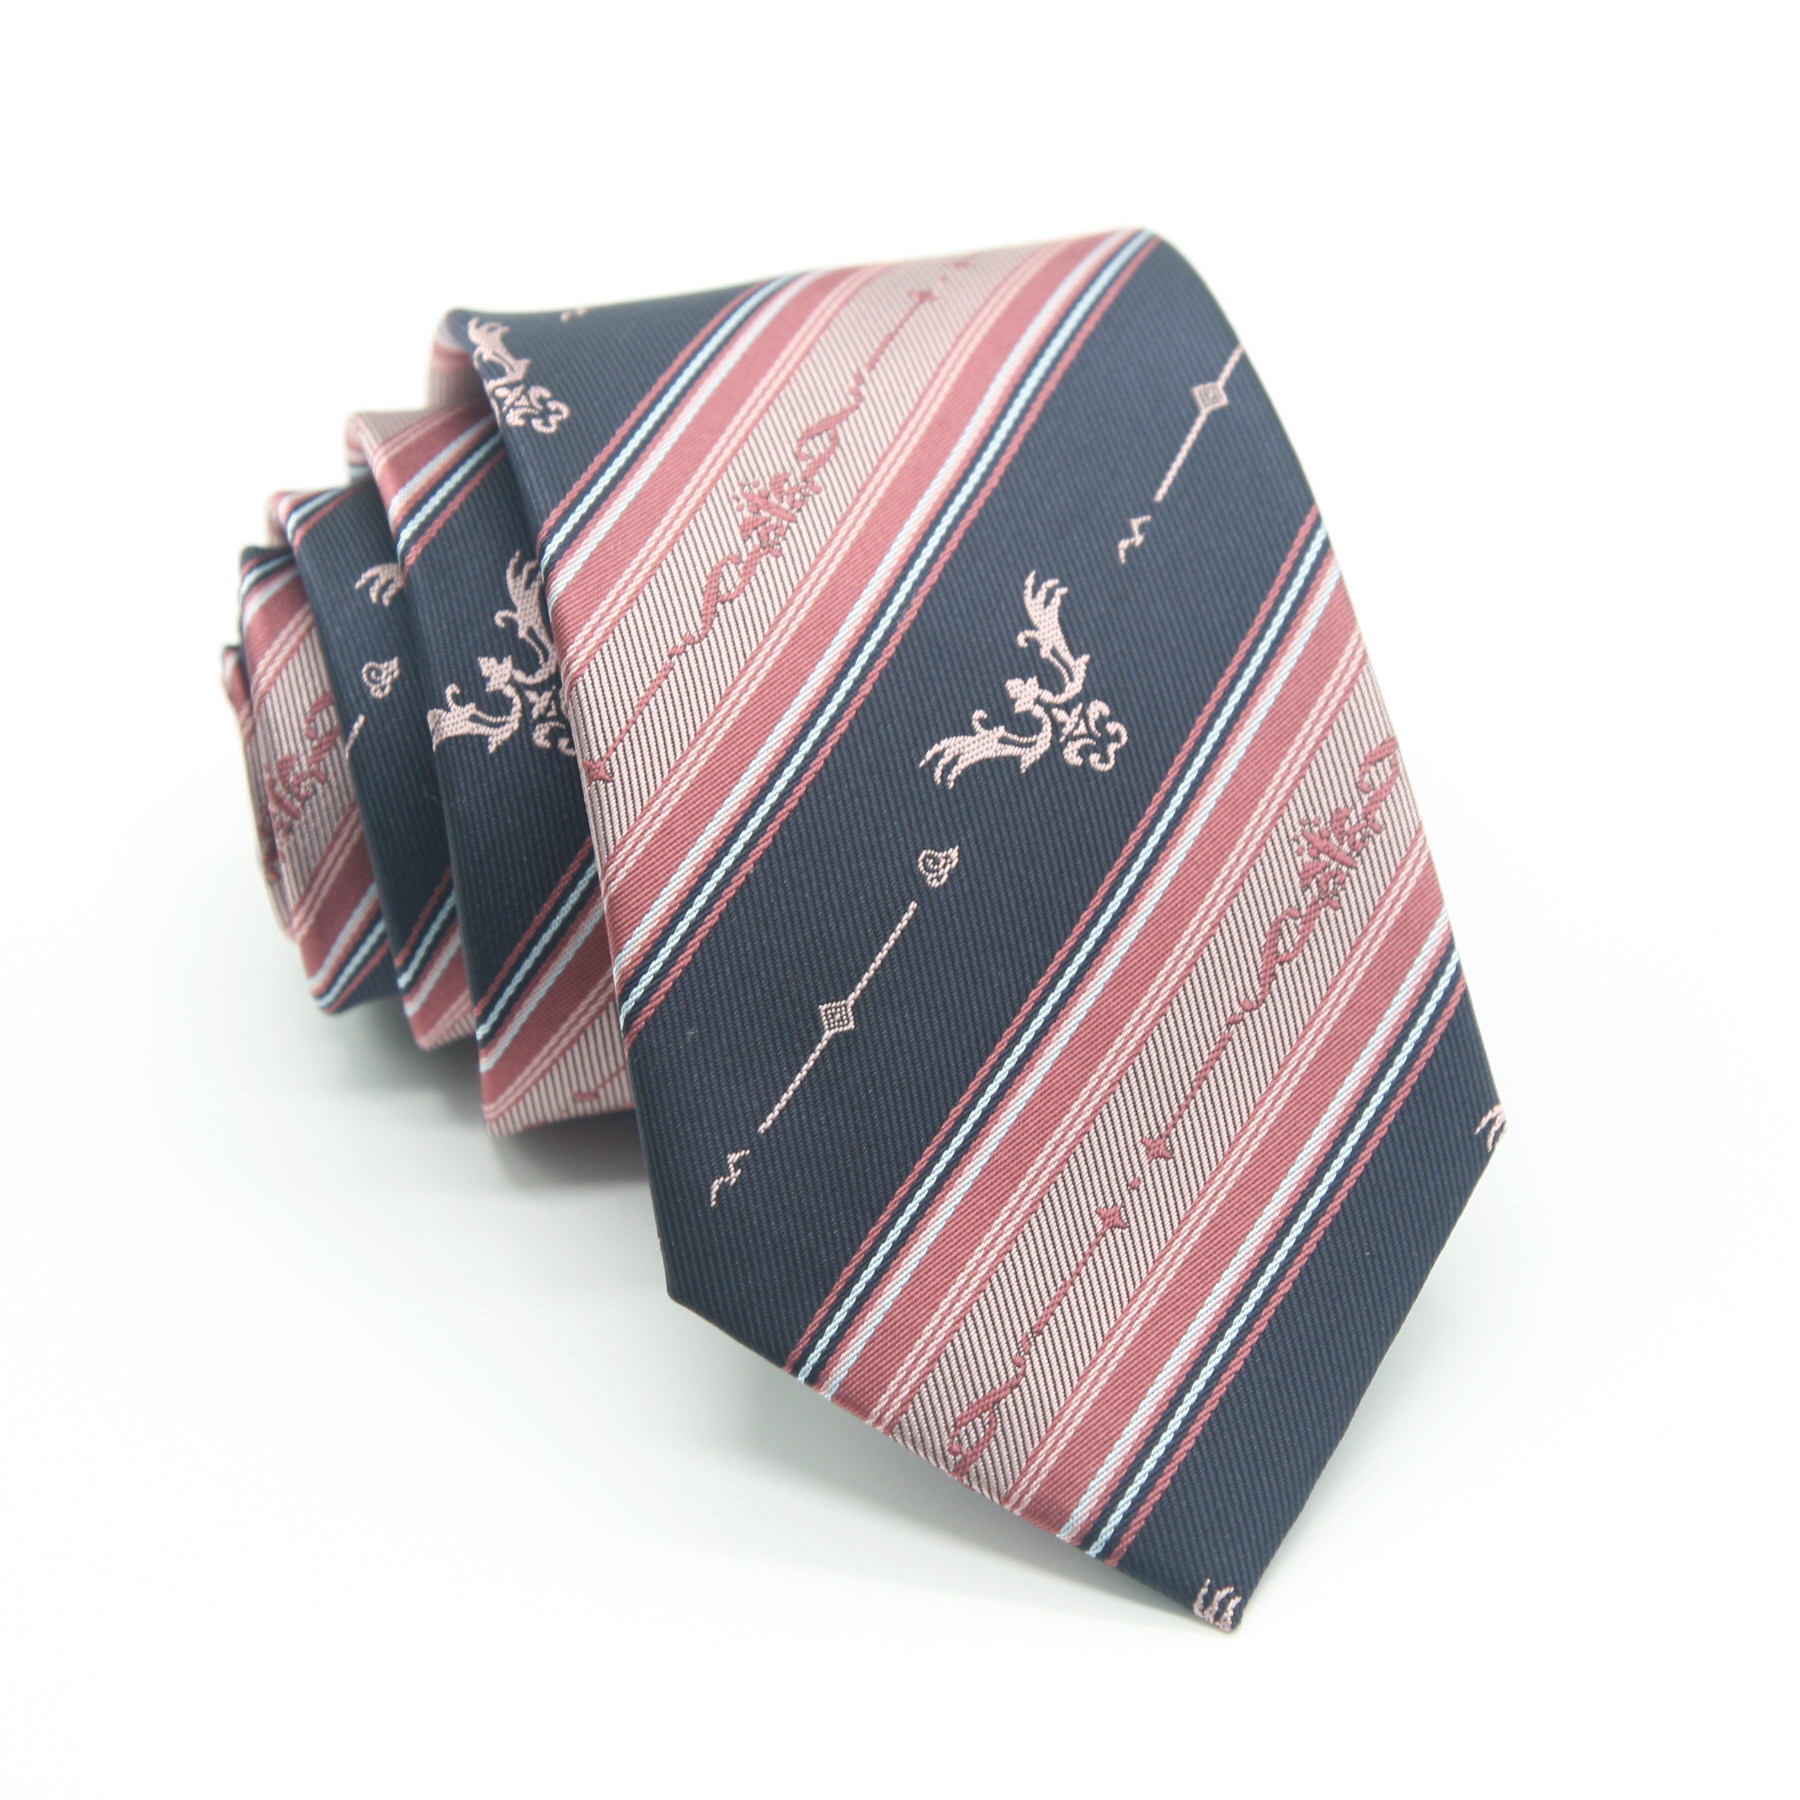 Cà vạt JK phong cách đại học Nhật Bản những thứ nhỏ cho đồng phục học sinh cà vạt sọc thiết kế tùy chỉnh cho phụ nữ